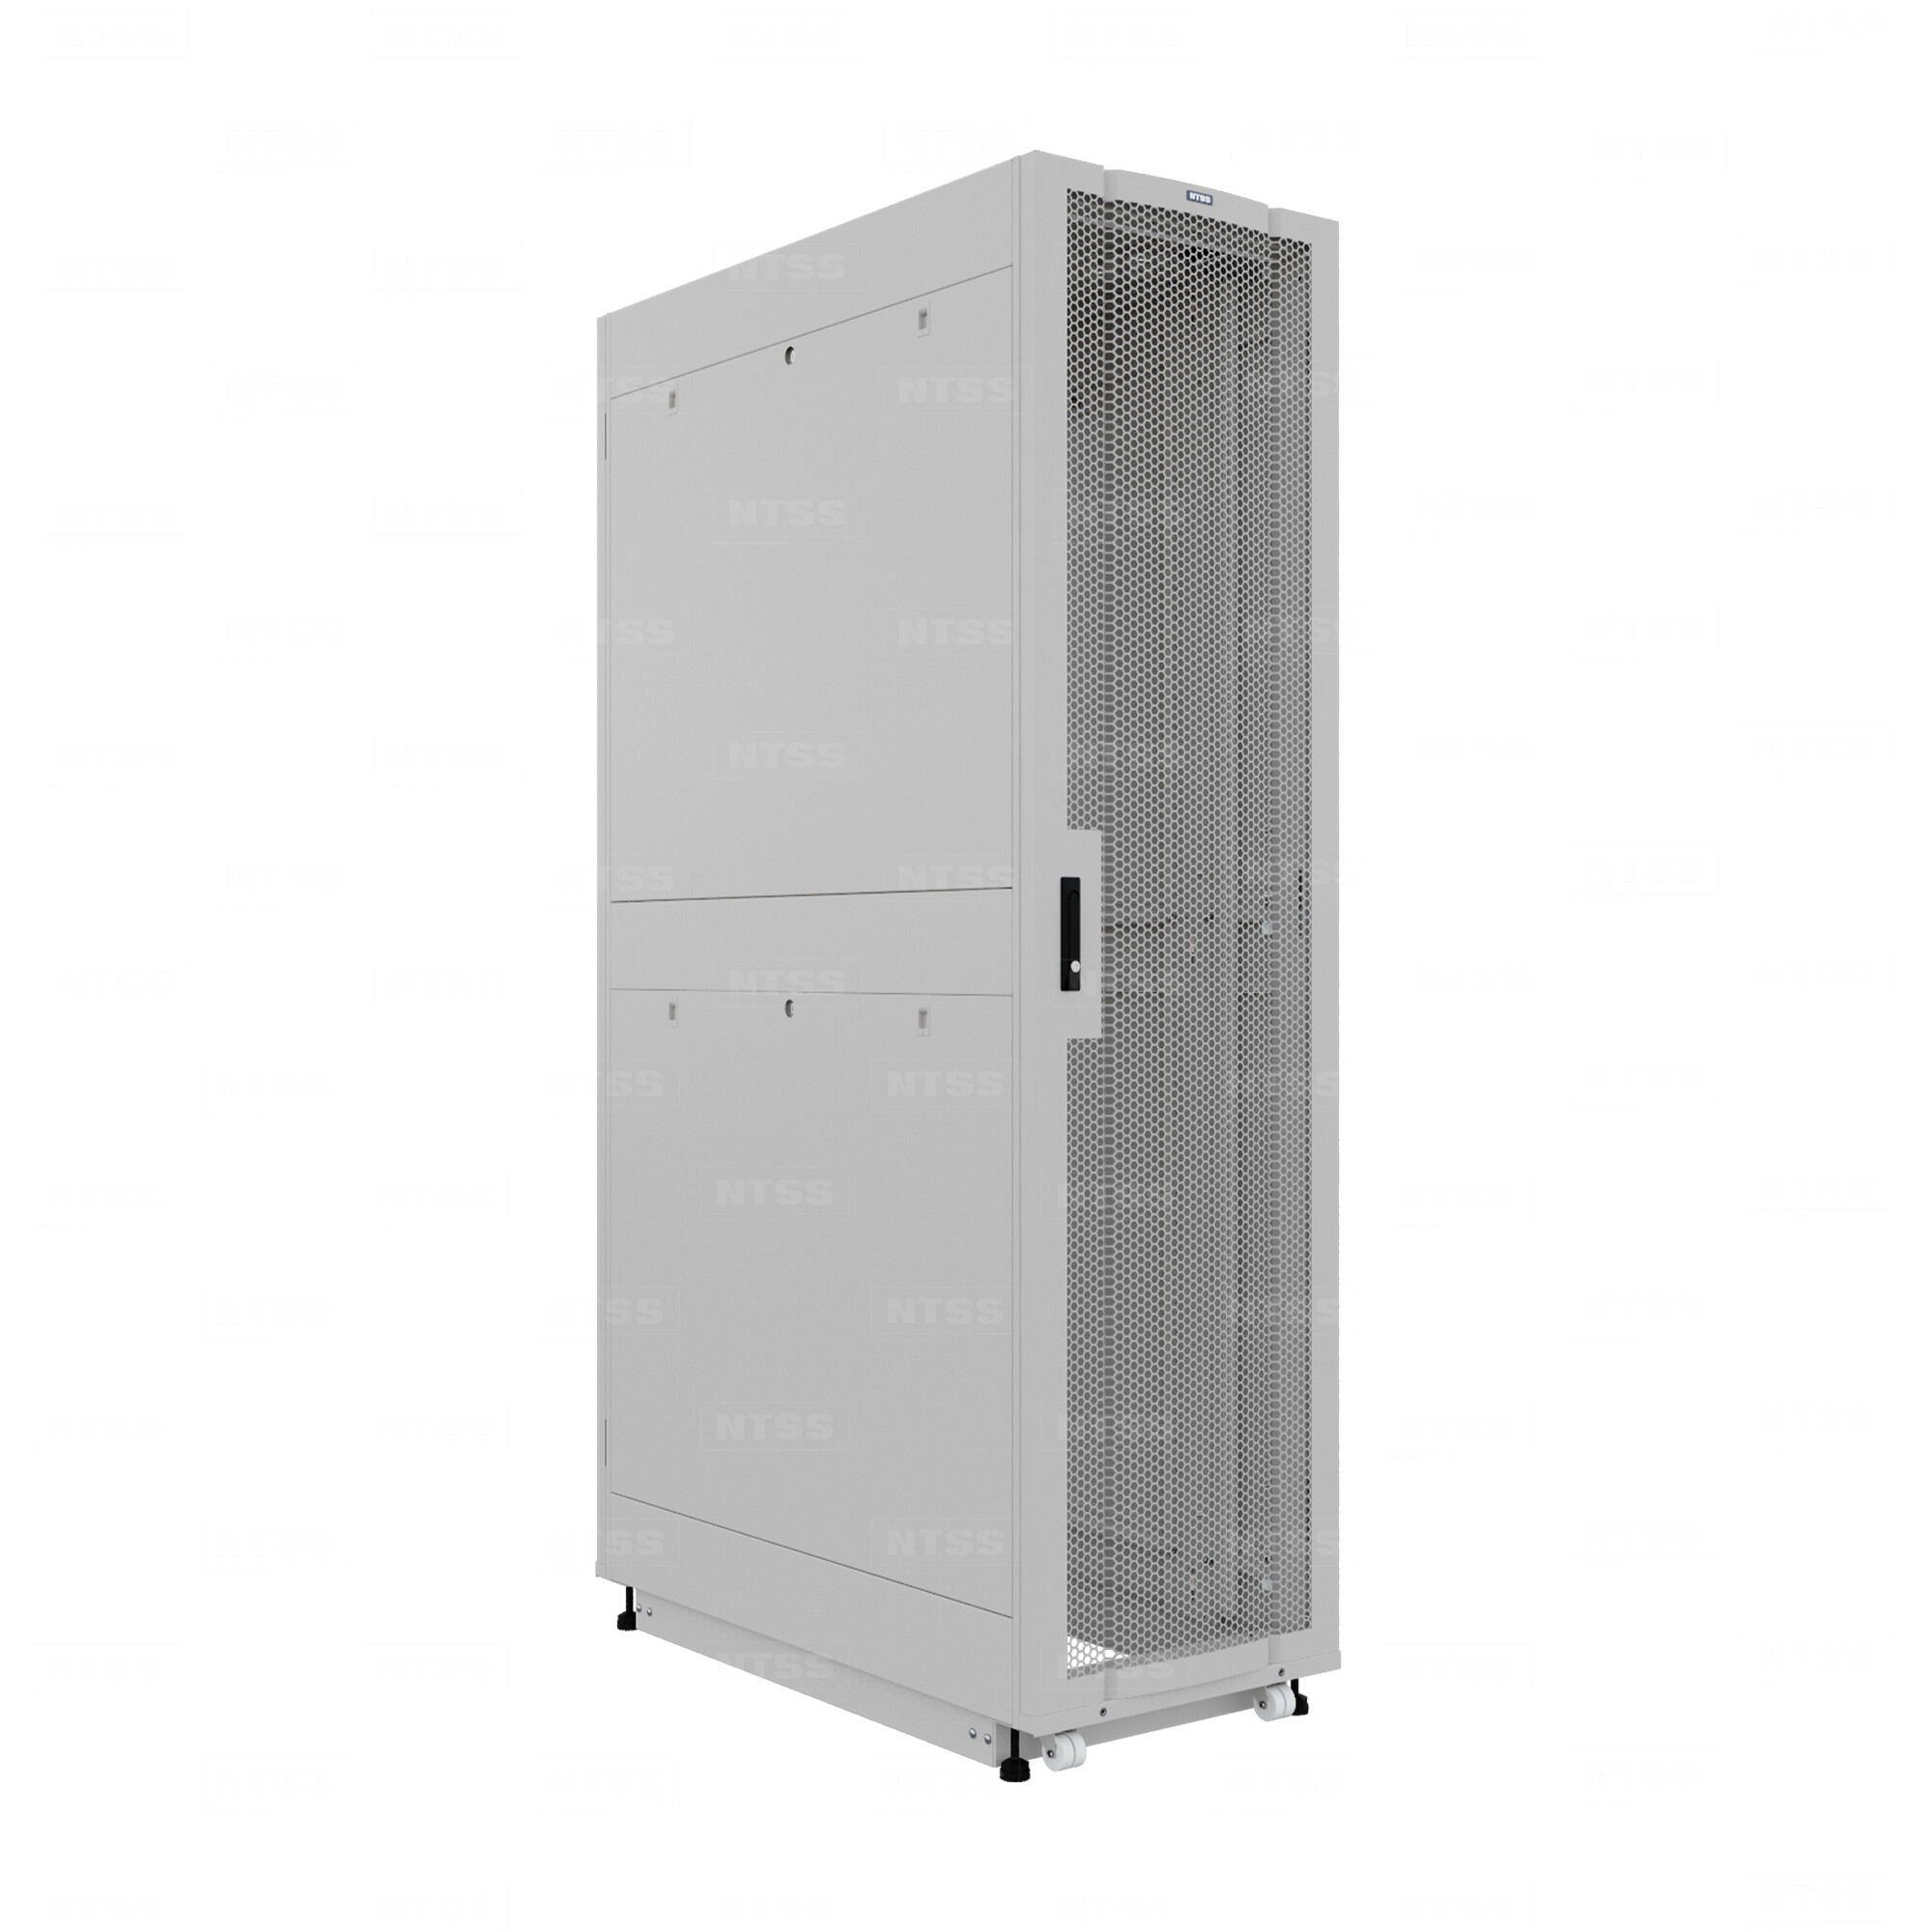 19" Напольный серверный шкаф NTSS ПРОЦОД PC 45U 600х1200 мм, передняя дверь перфорация, задняя дверь распашная двойная п